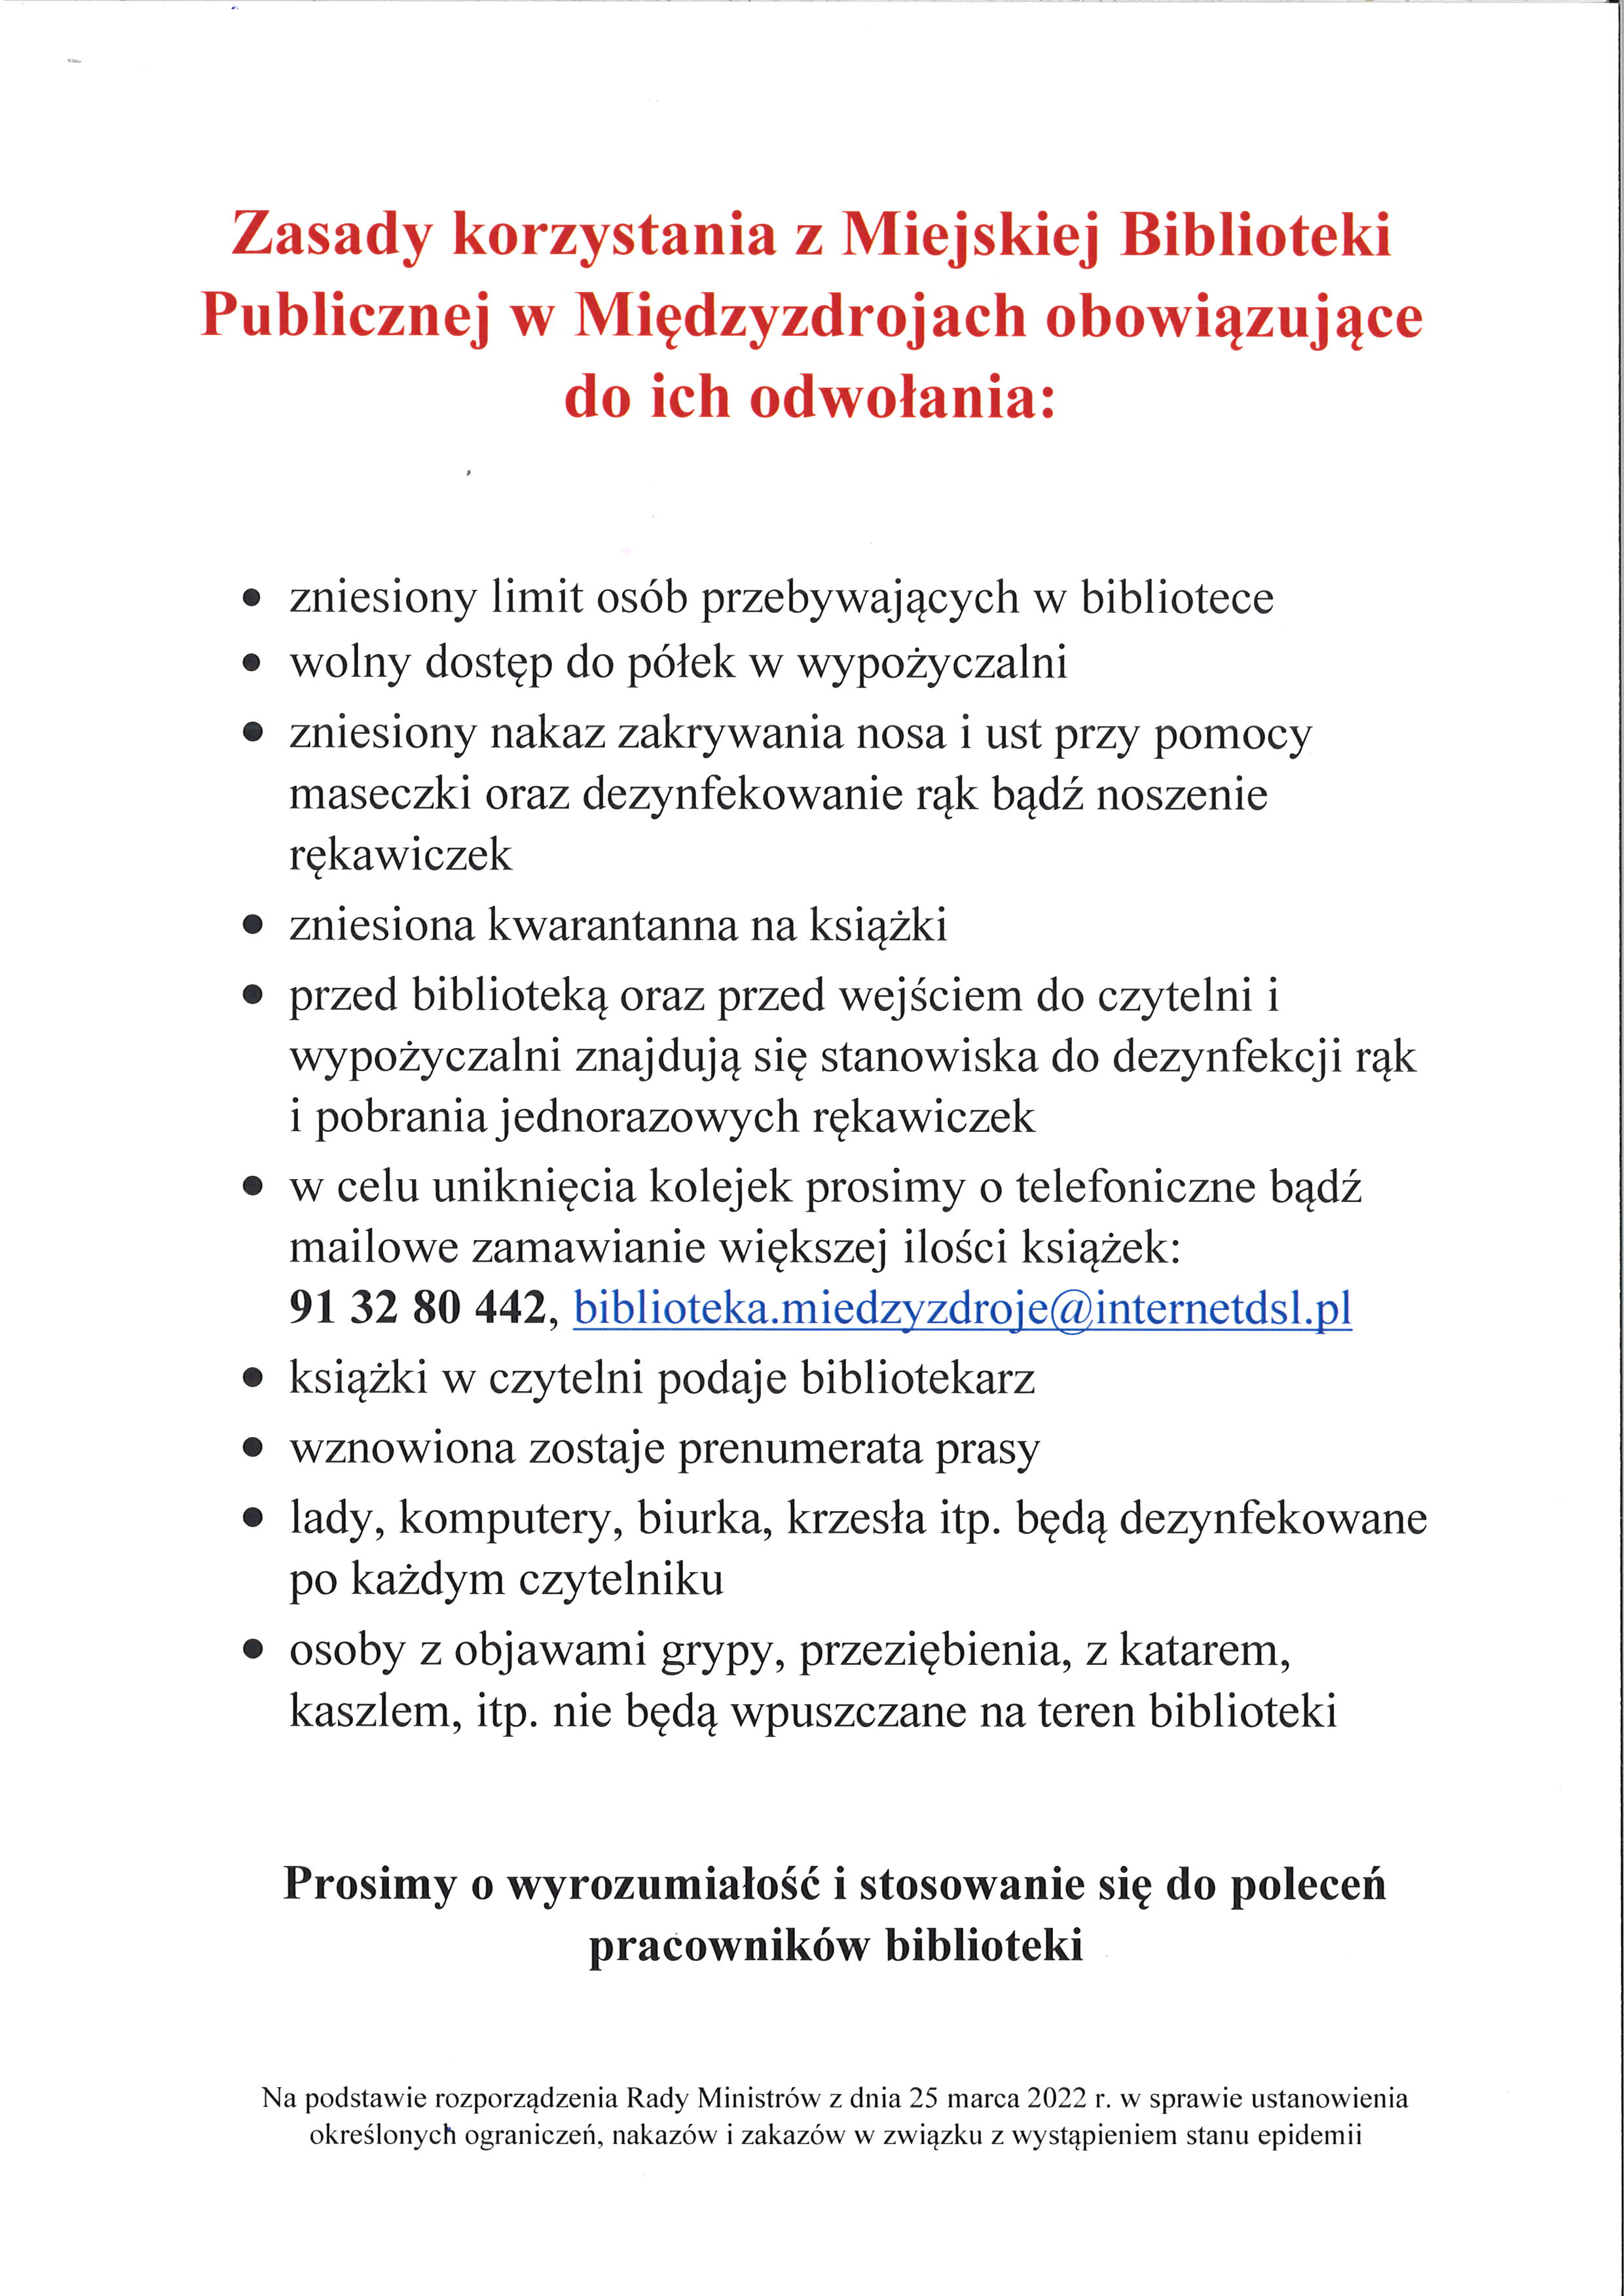 Zasady korzystania z Miejskiej Biblioteki Publicznej w Międzyzdrojach 28.03.2022 r.